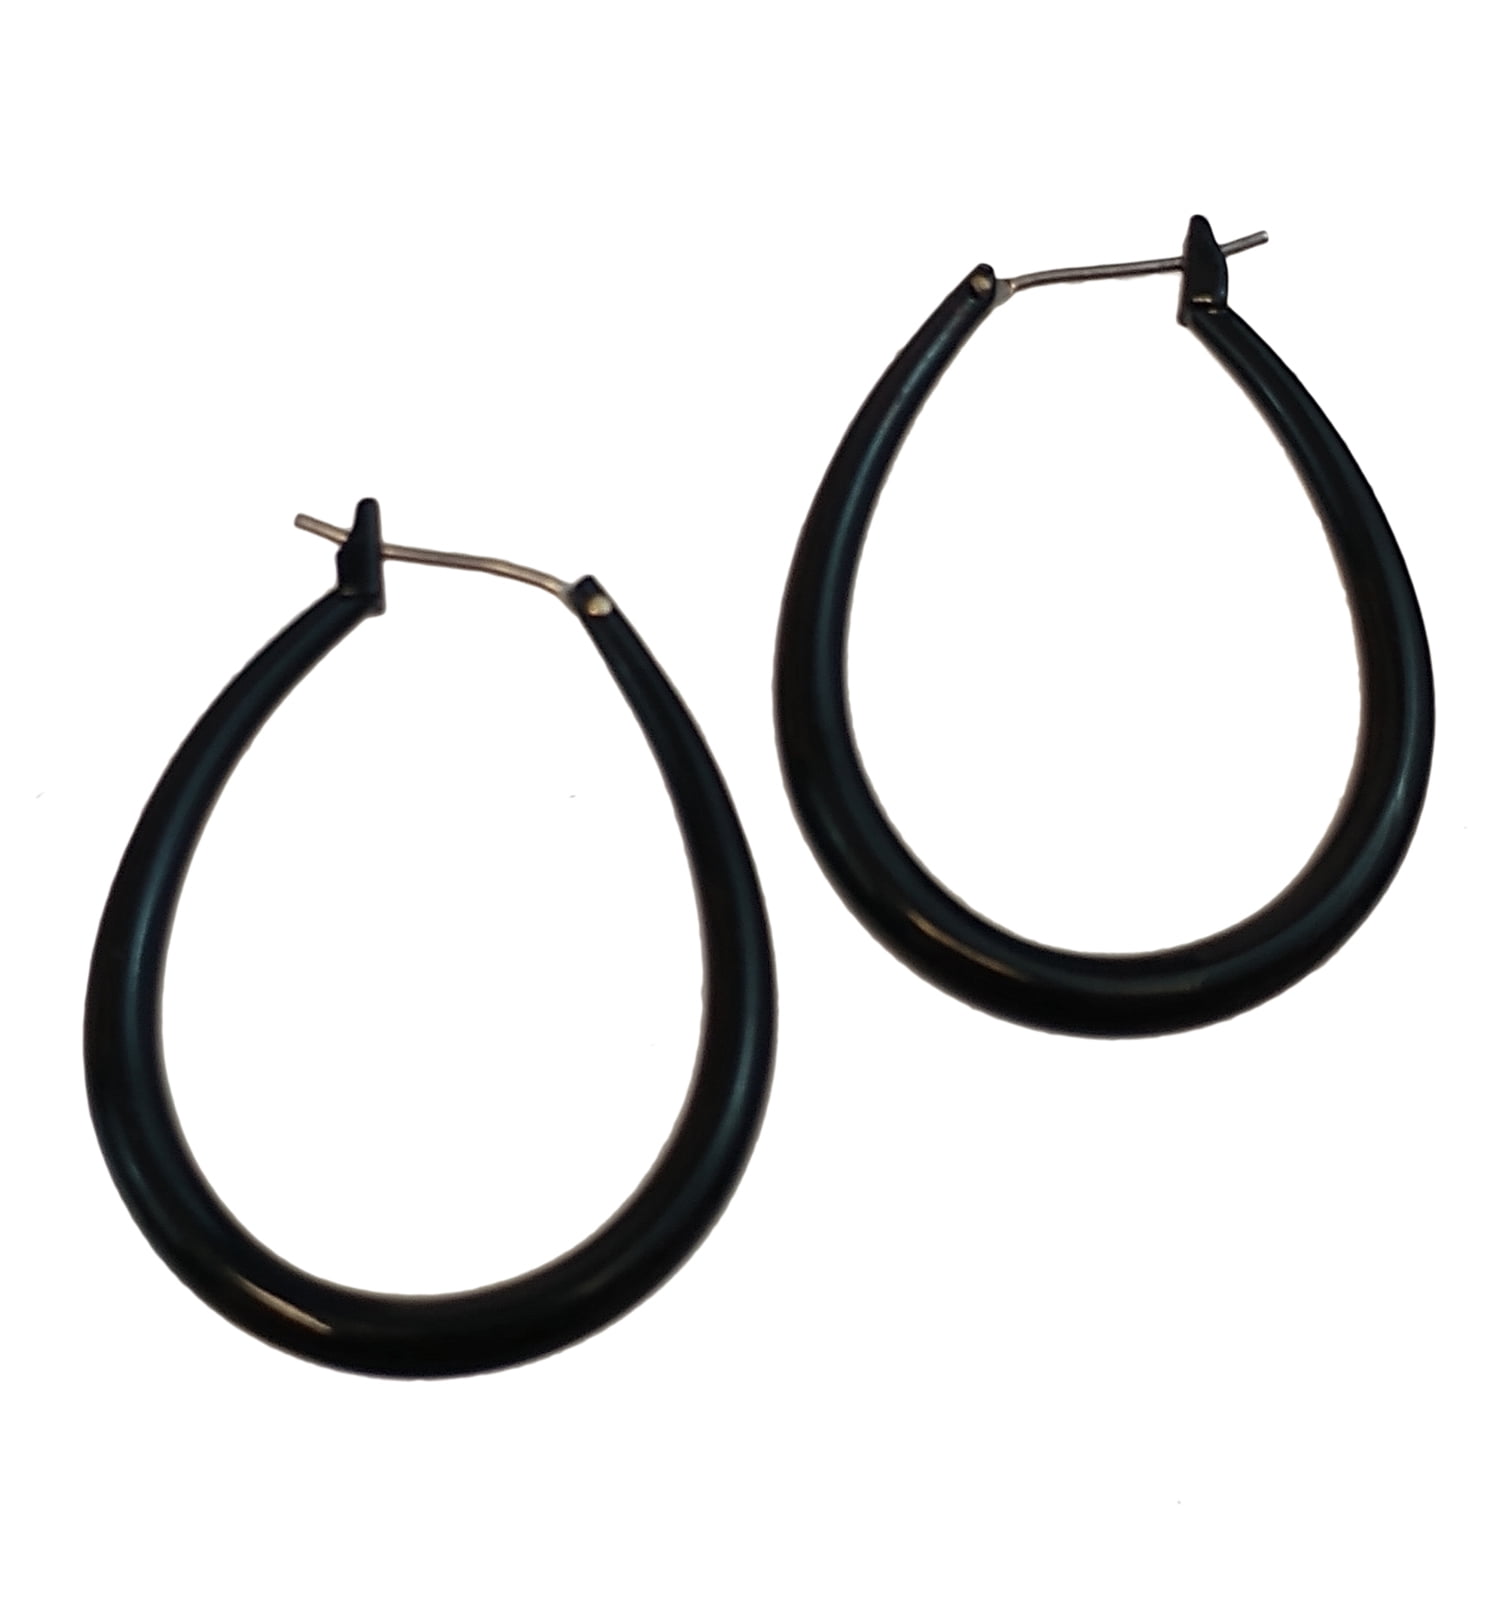 Black Tube Oval Teardrop Hoop Loop Pierced Earrings 1 3/8